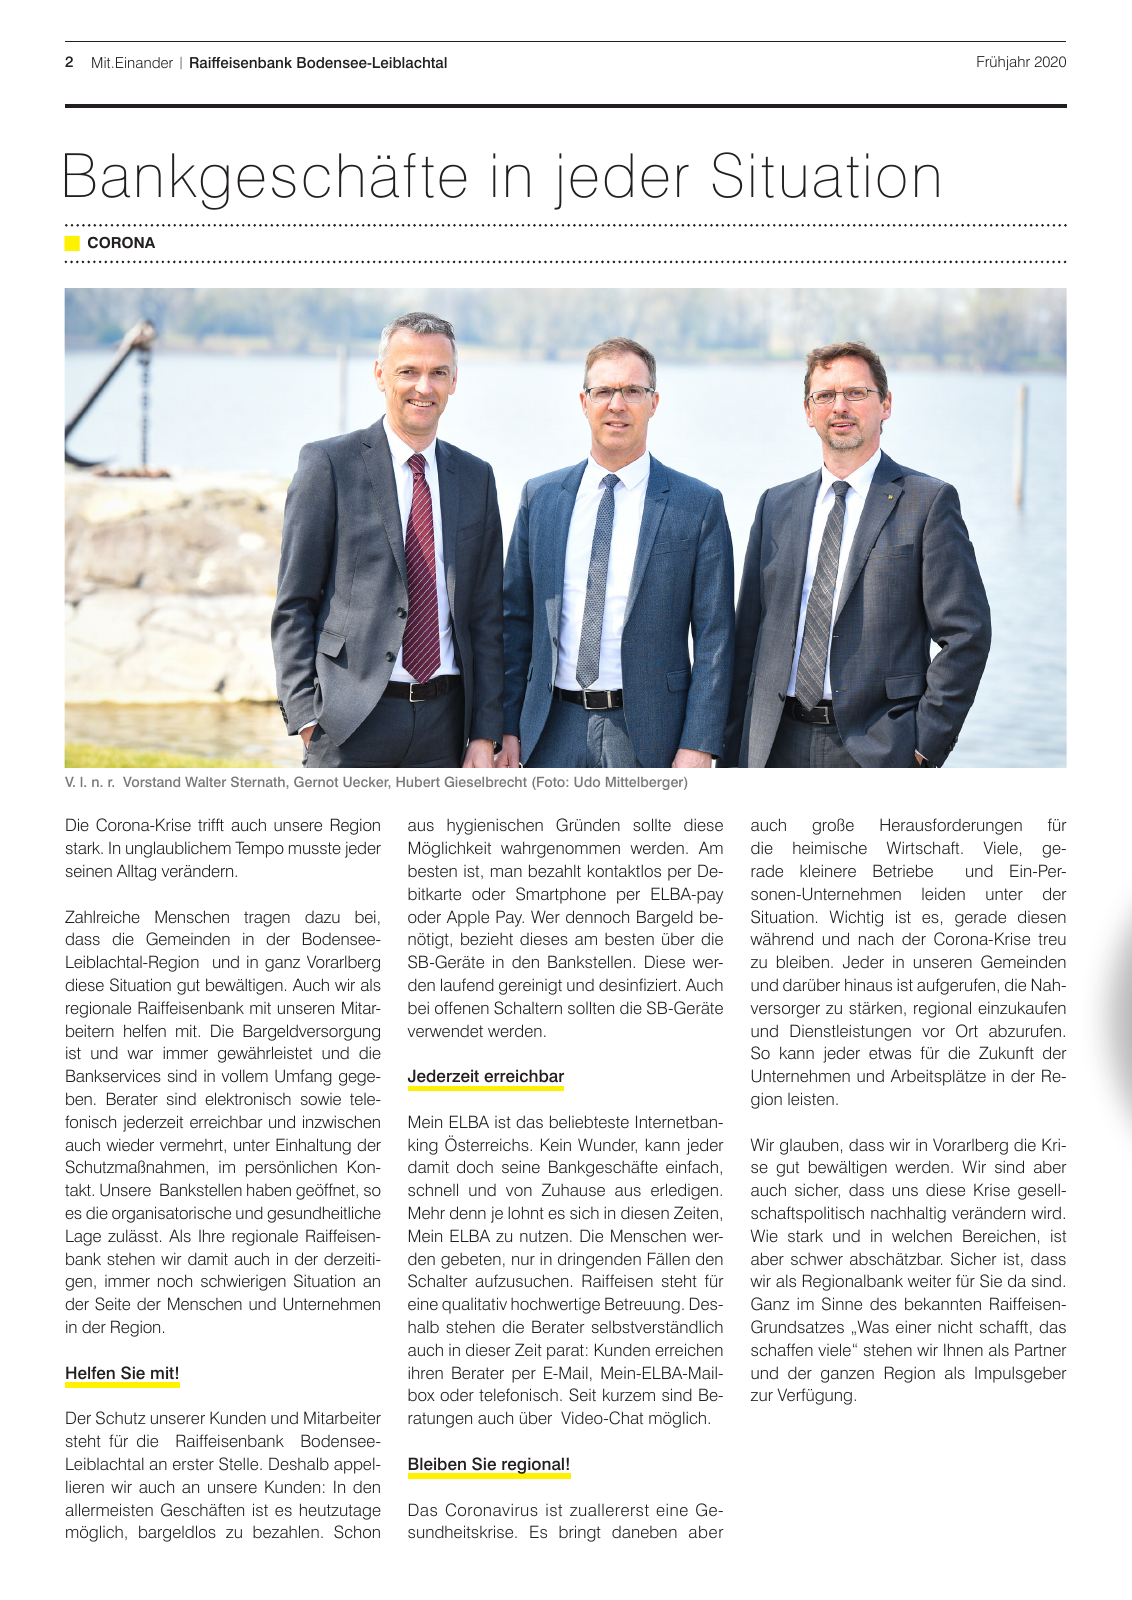 Vorschau Mitgliederzeitung RB Bodensee-Leiblachtal Frühjahr 2020 Seite 2